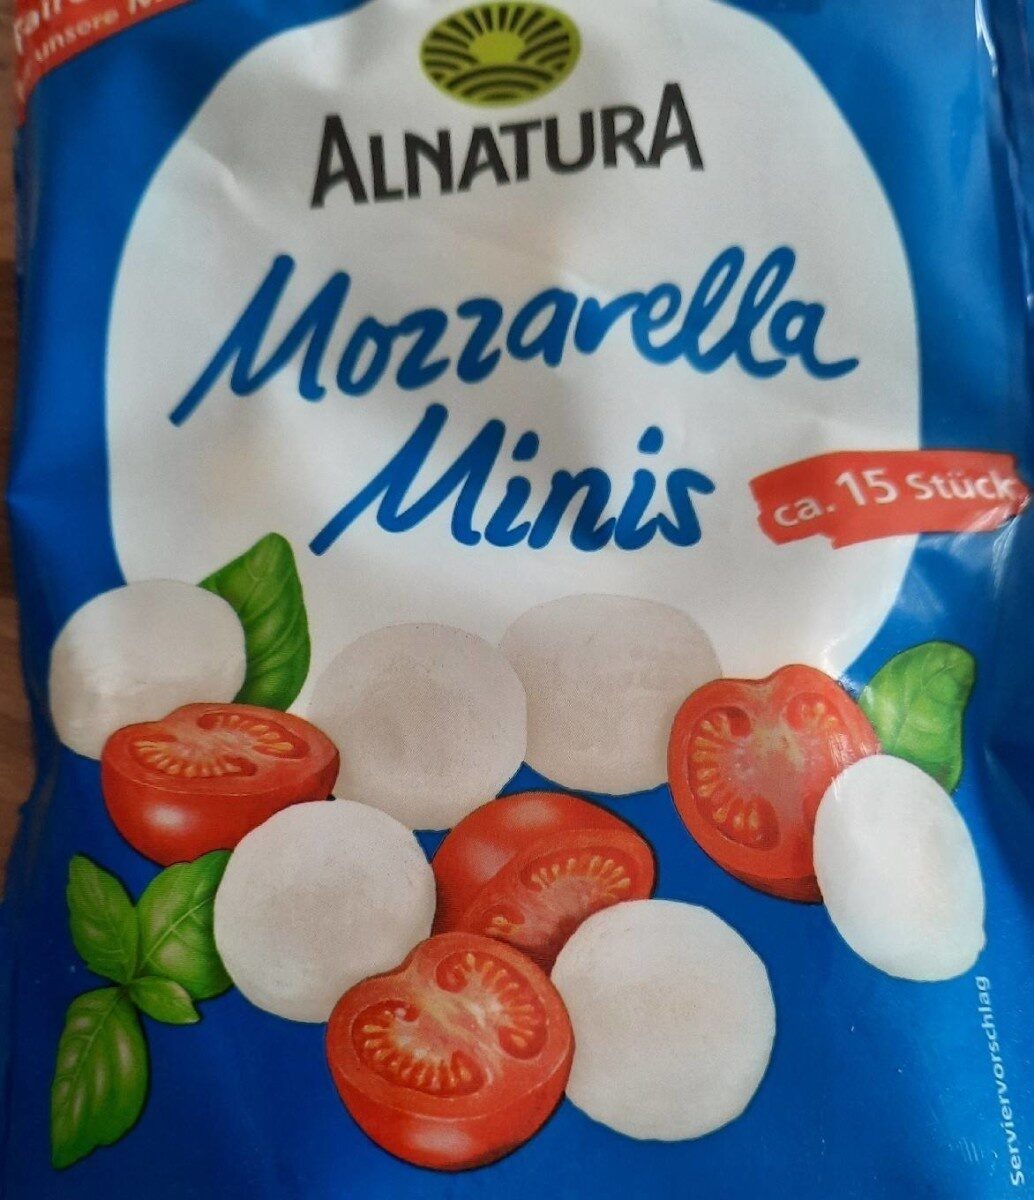 Mozzarella Minis - Tableau nutritionnel